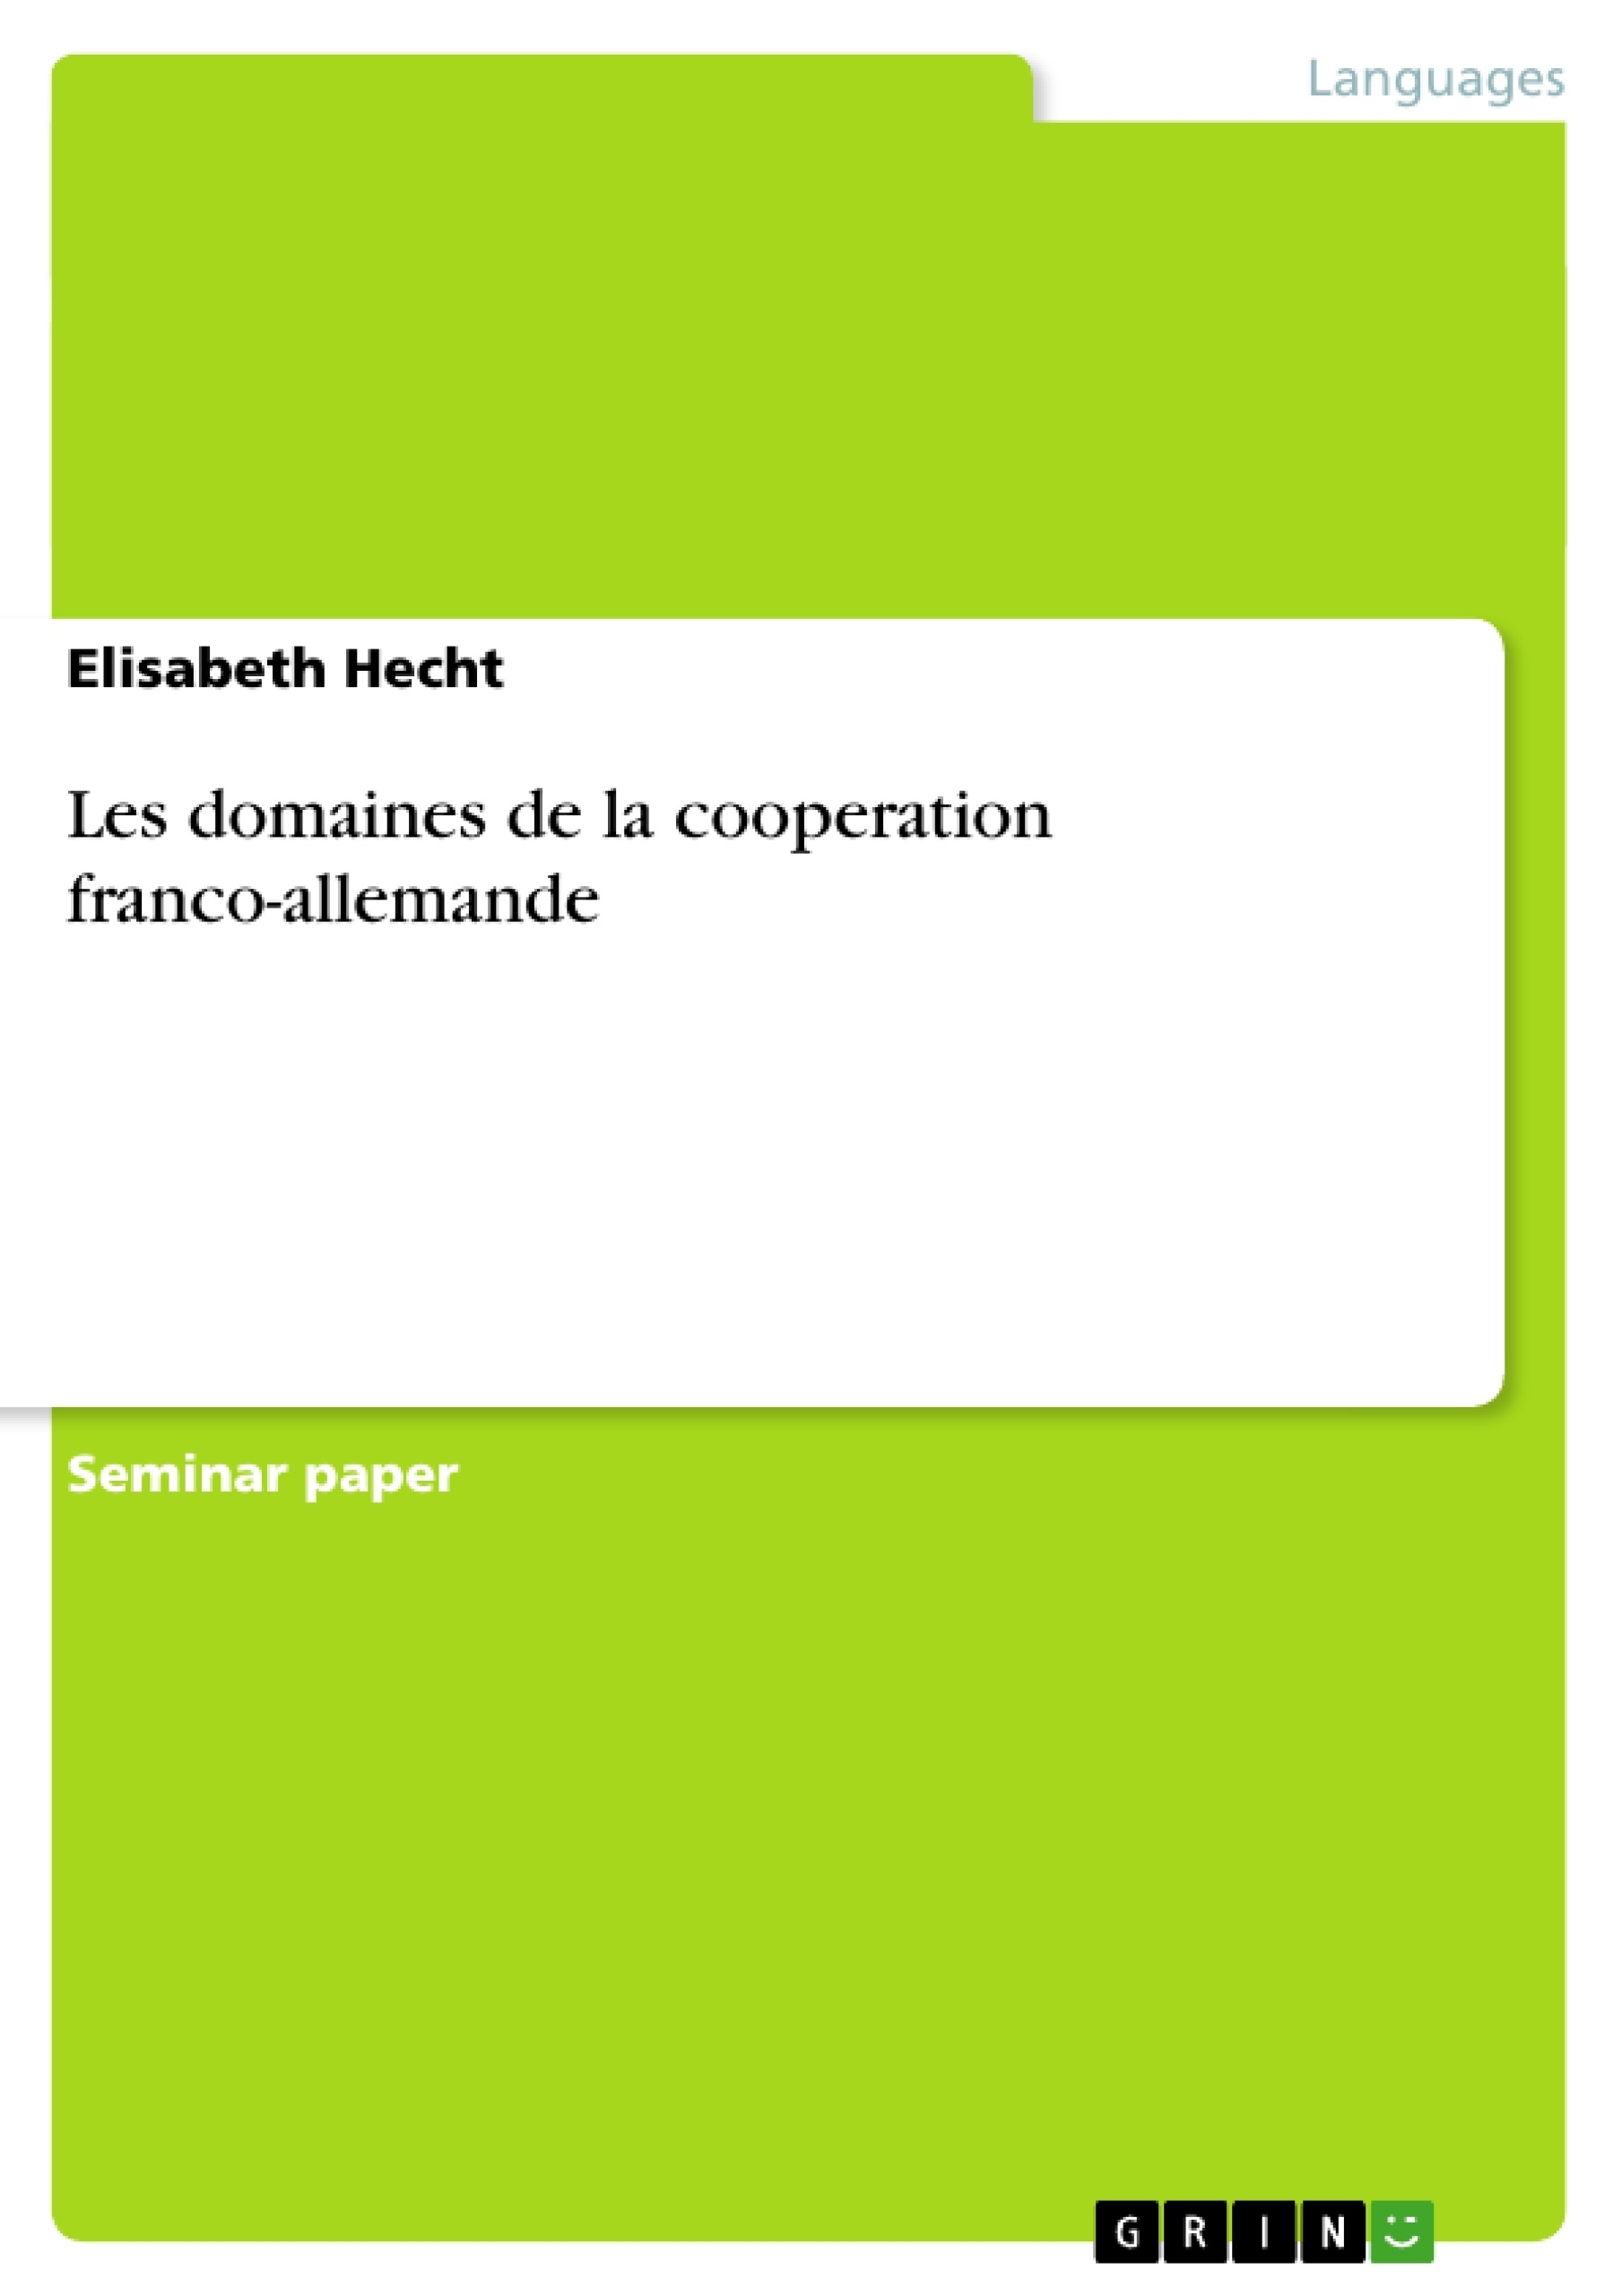 Title: Les domaines de la cooperation franco-allemande